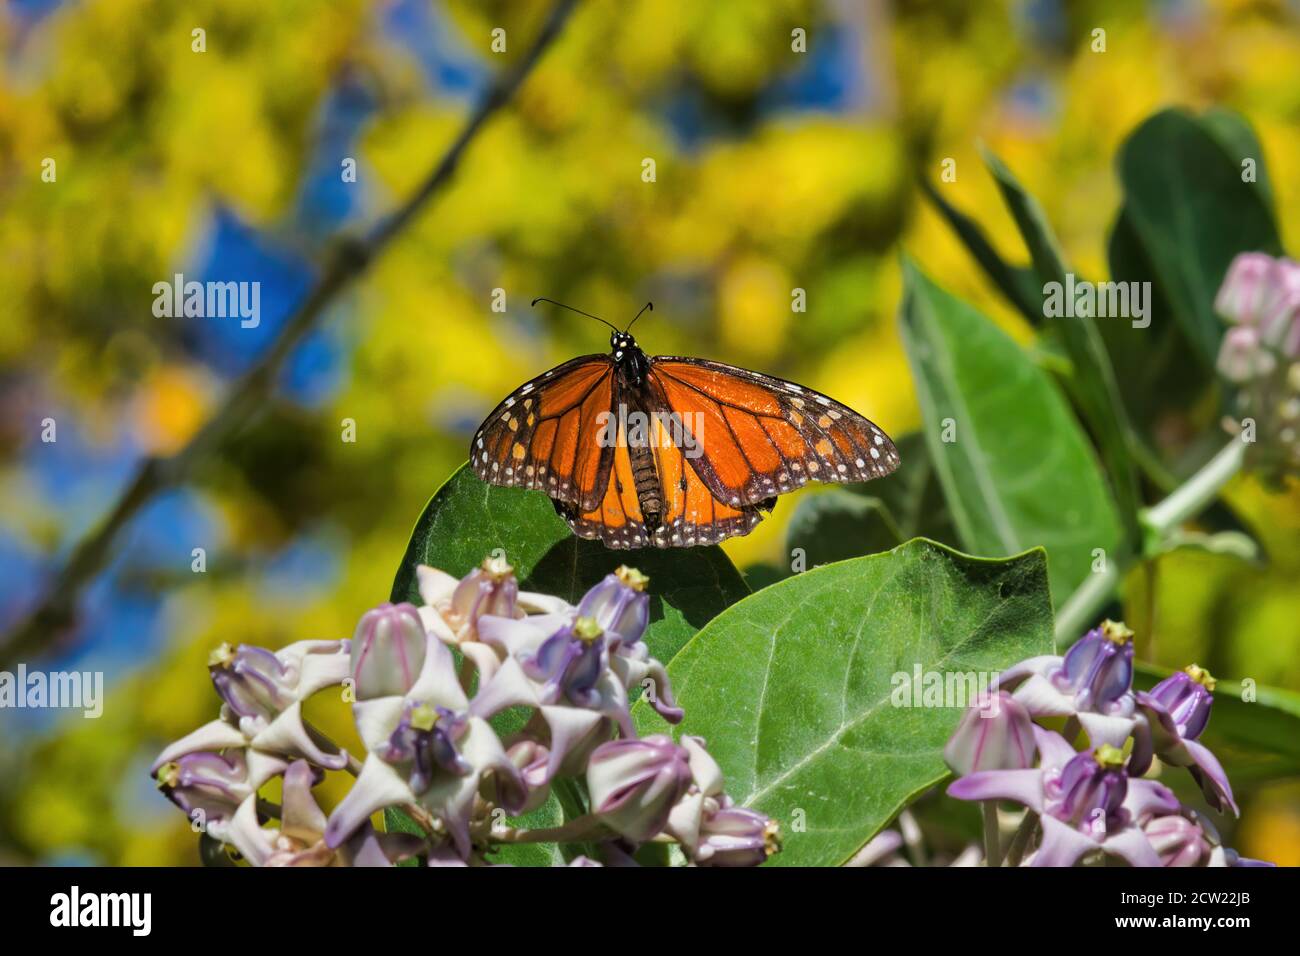 Schöner Monarch Schmetterling mit Flügeln ausgebreitet sonnen in der Sonne, während sie sich auf einem Blatt eines riesigen Milchkrautbaumes. Stockfoto